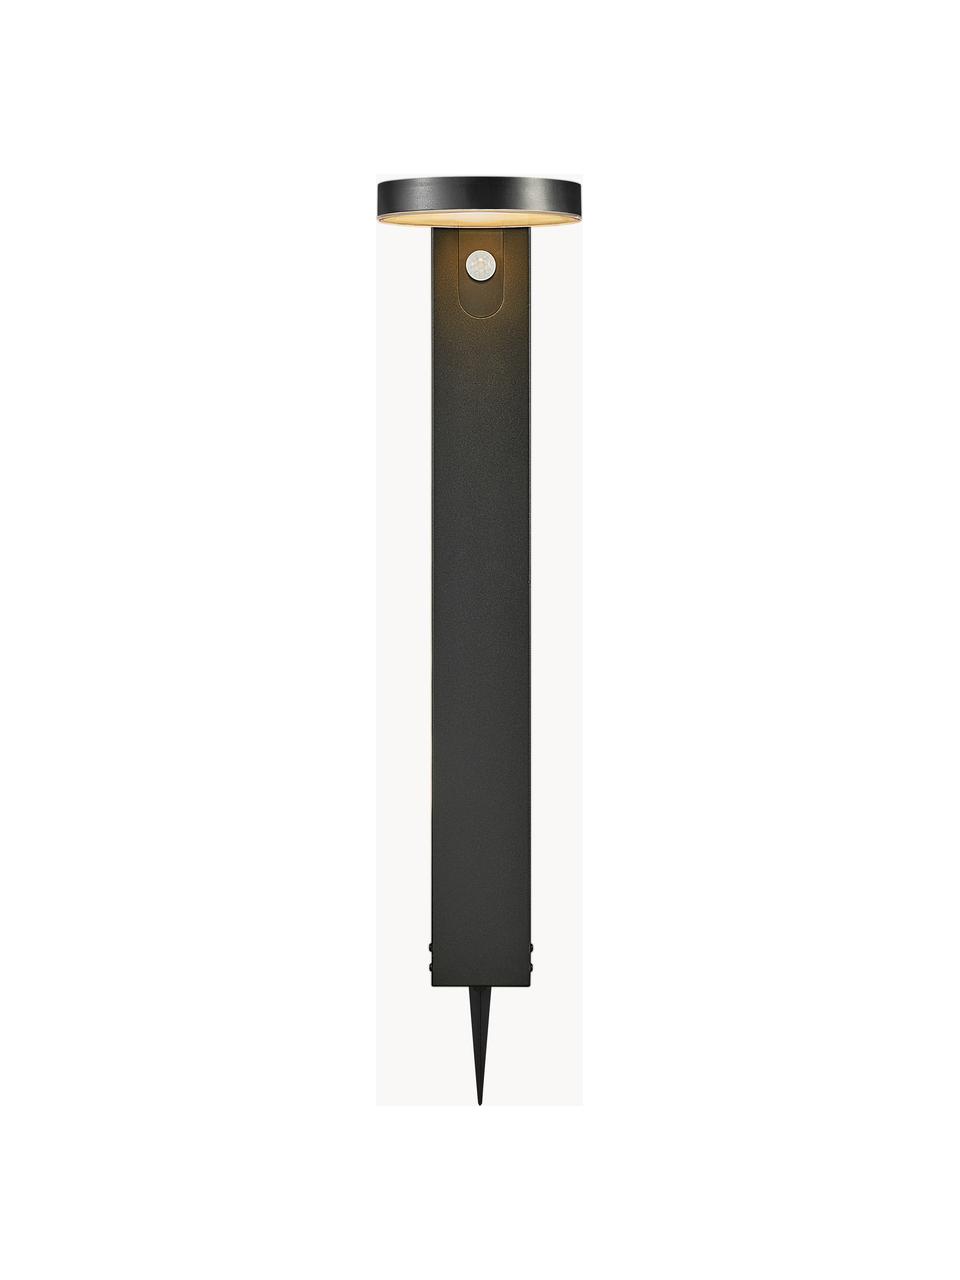 Solar padverlichting Rica met bewegingssensor, Lampenkap: kunststof, Lampvoet: gecoat staal, Zwart, B 15 x H 60 cm